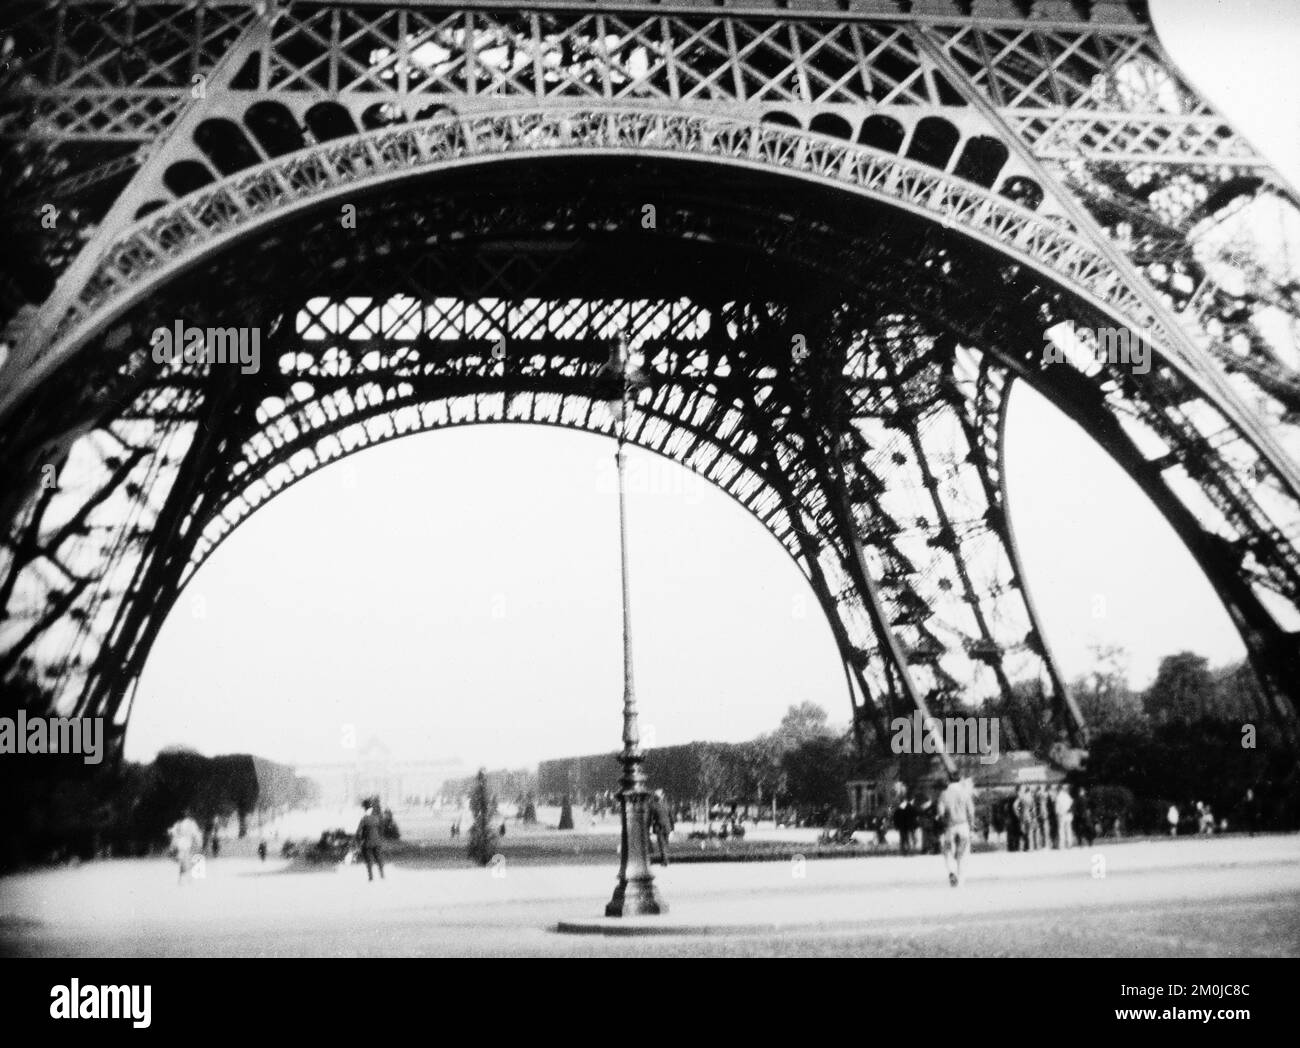 Una fotografia vintage in bianco e nero dei primi anni del 20th che mostra la base della Torre Eiffel a Parigi, Francia. Foto Stock